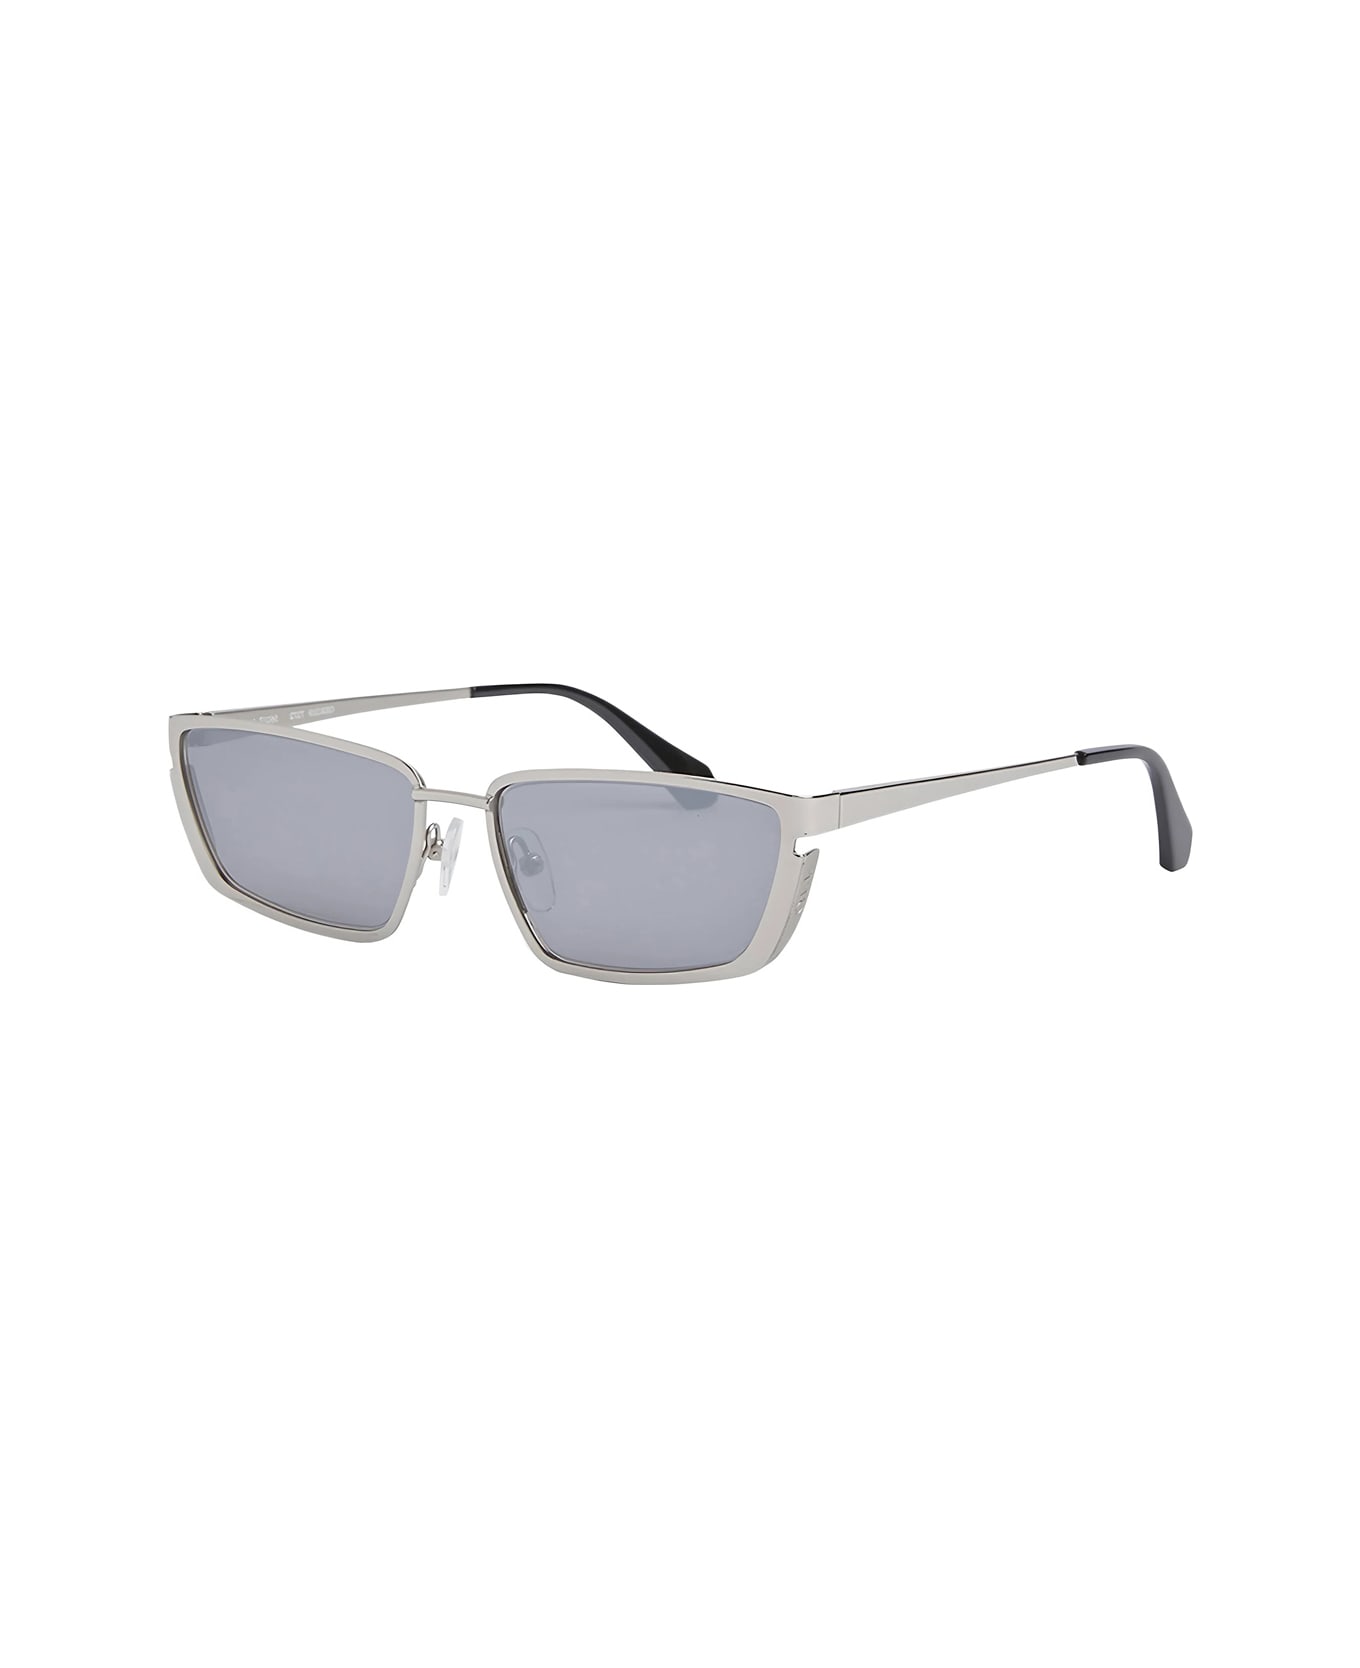 Off-White Oeri119 Richfield 7272 Silver Silver Sunglasses - Argento